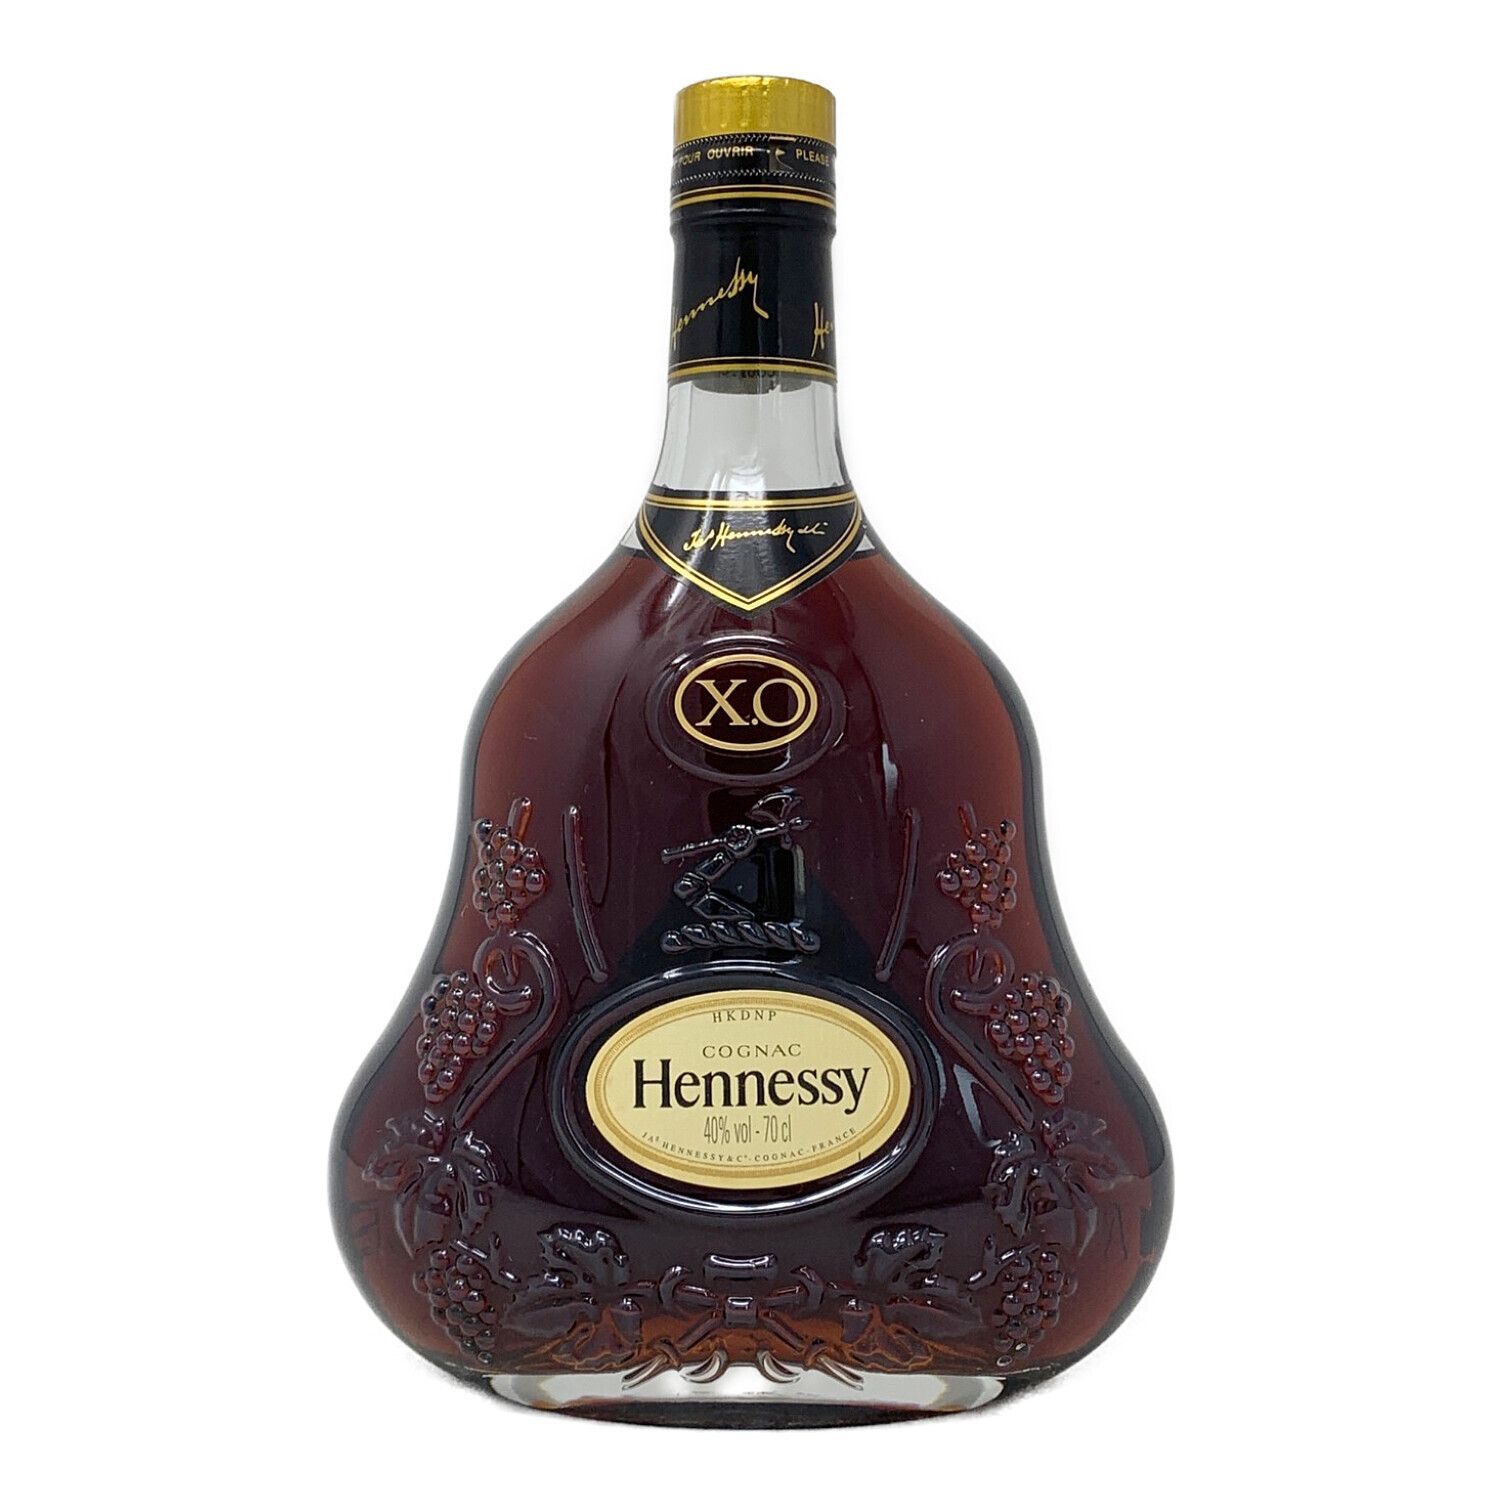 ヘネシー (Hennessy) コニャック 700ml XO 金キャップ クリア